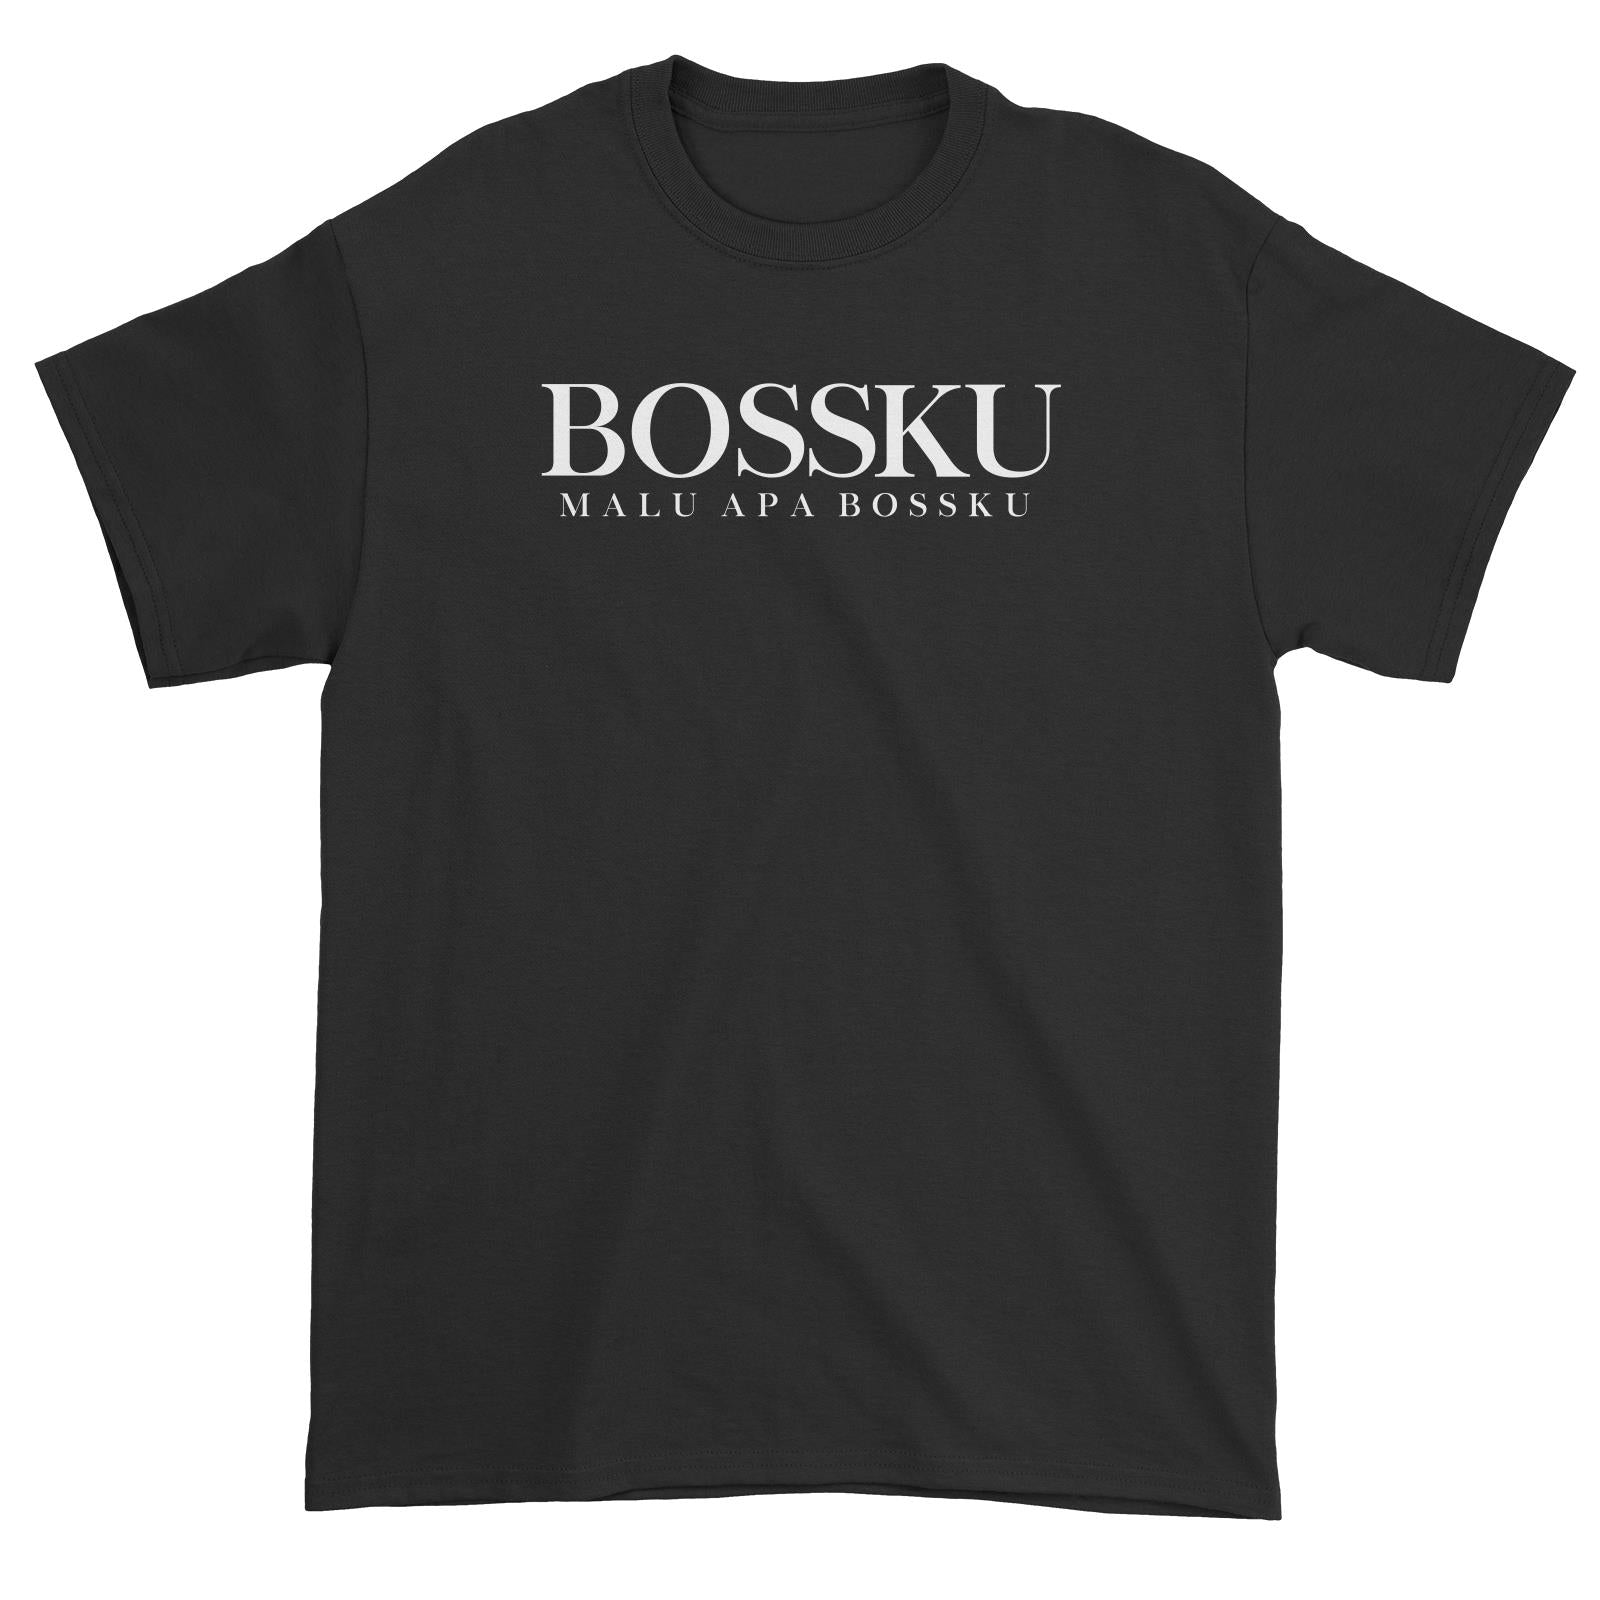 Slang Statement Bossku Malu Apa Bossku Unisex T-Shirt